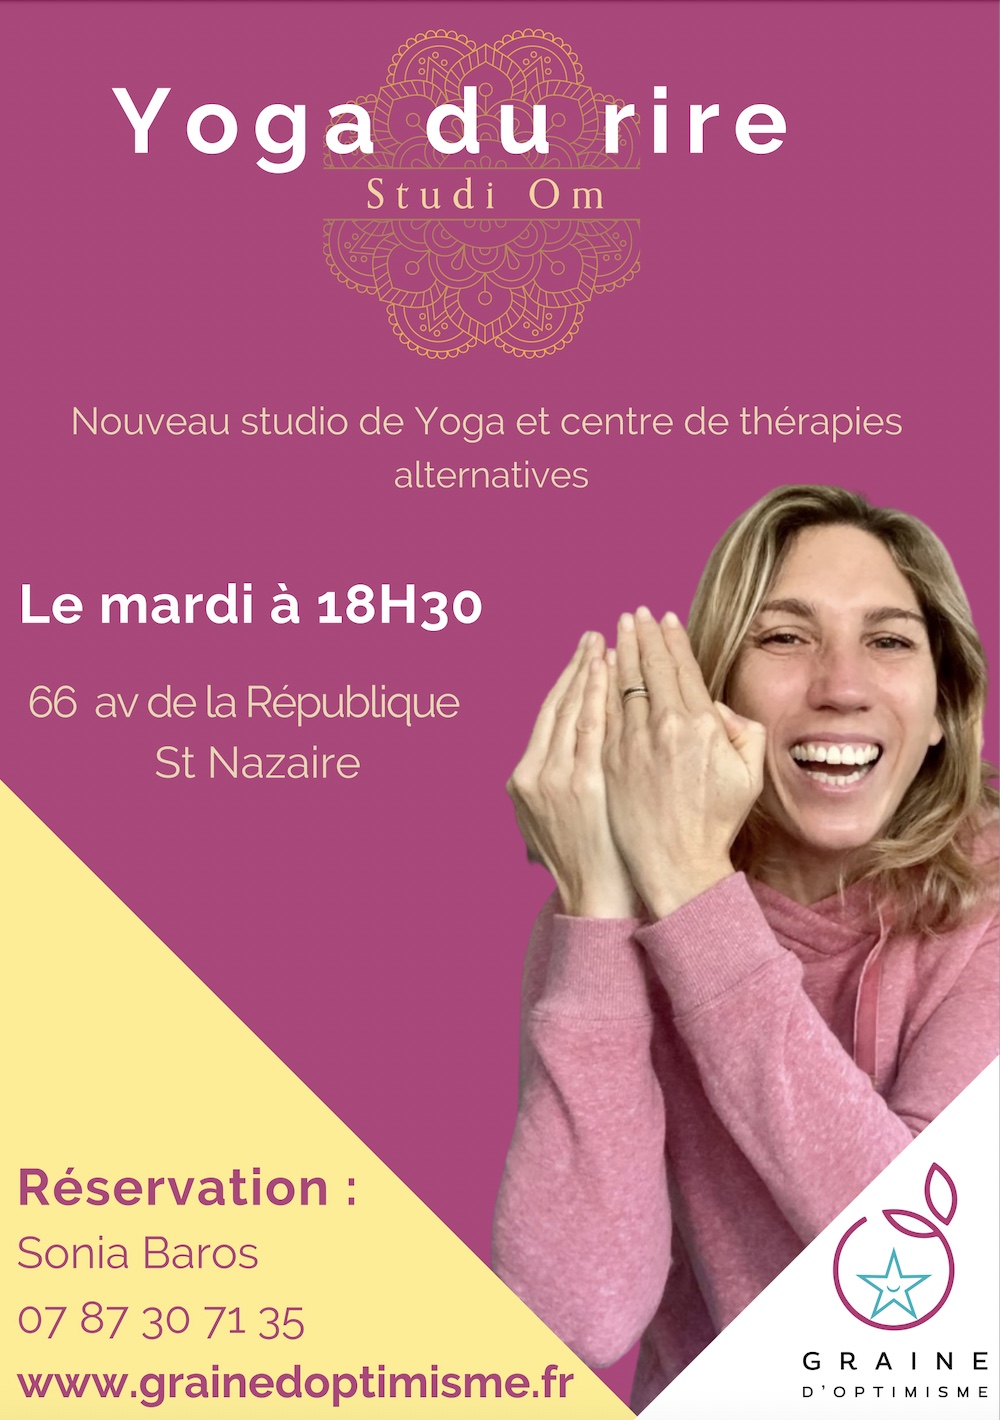 Yoga du rire Studi'Om - St Nazaire